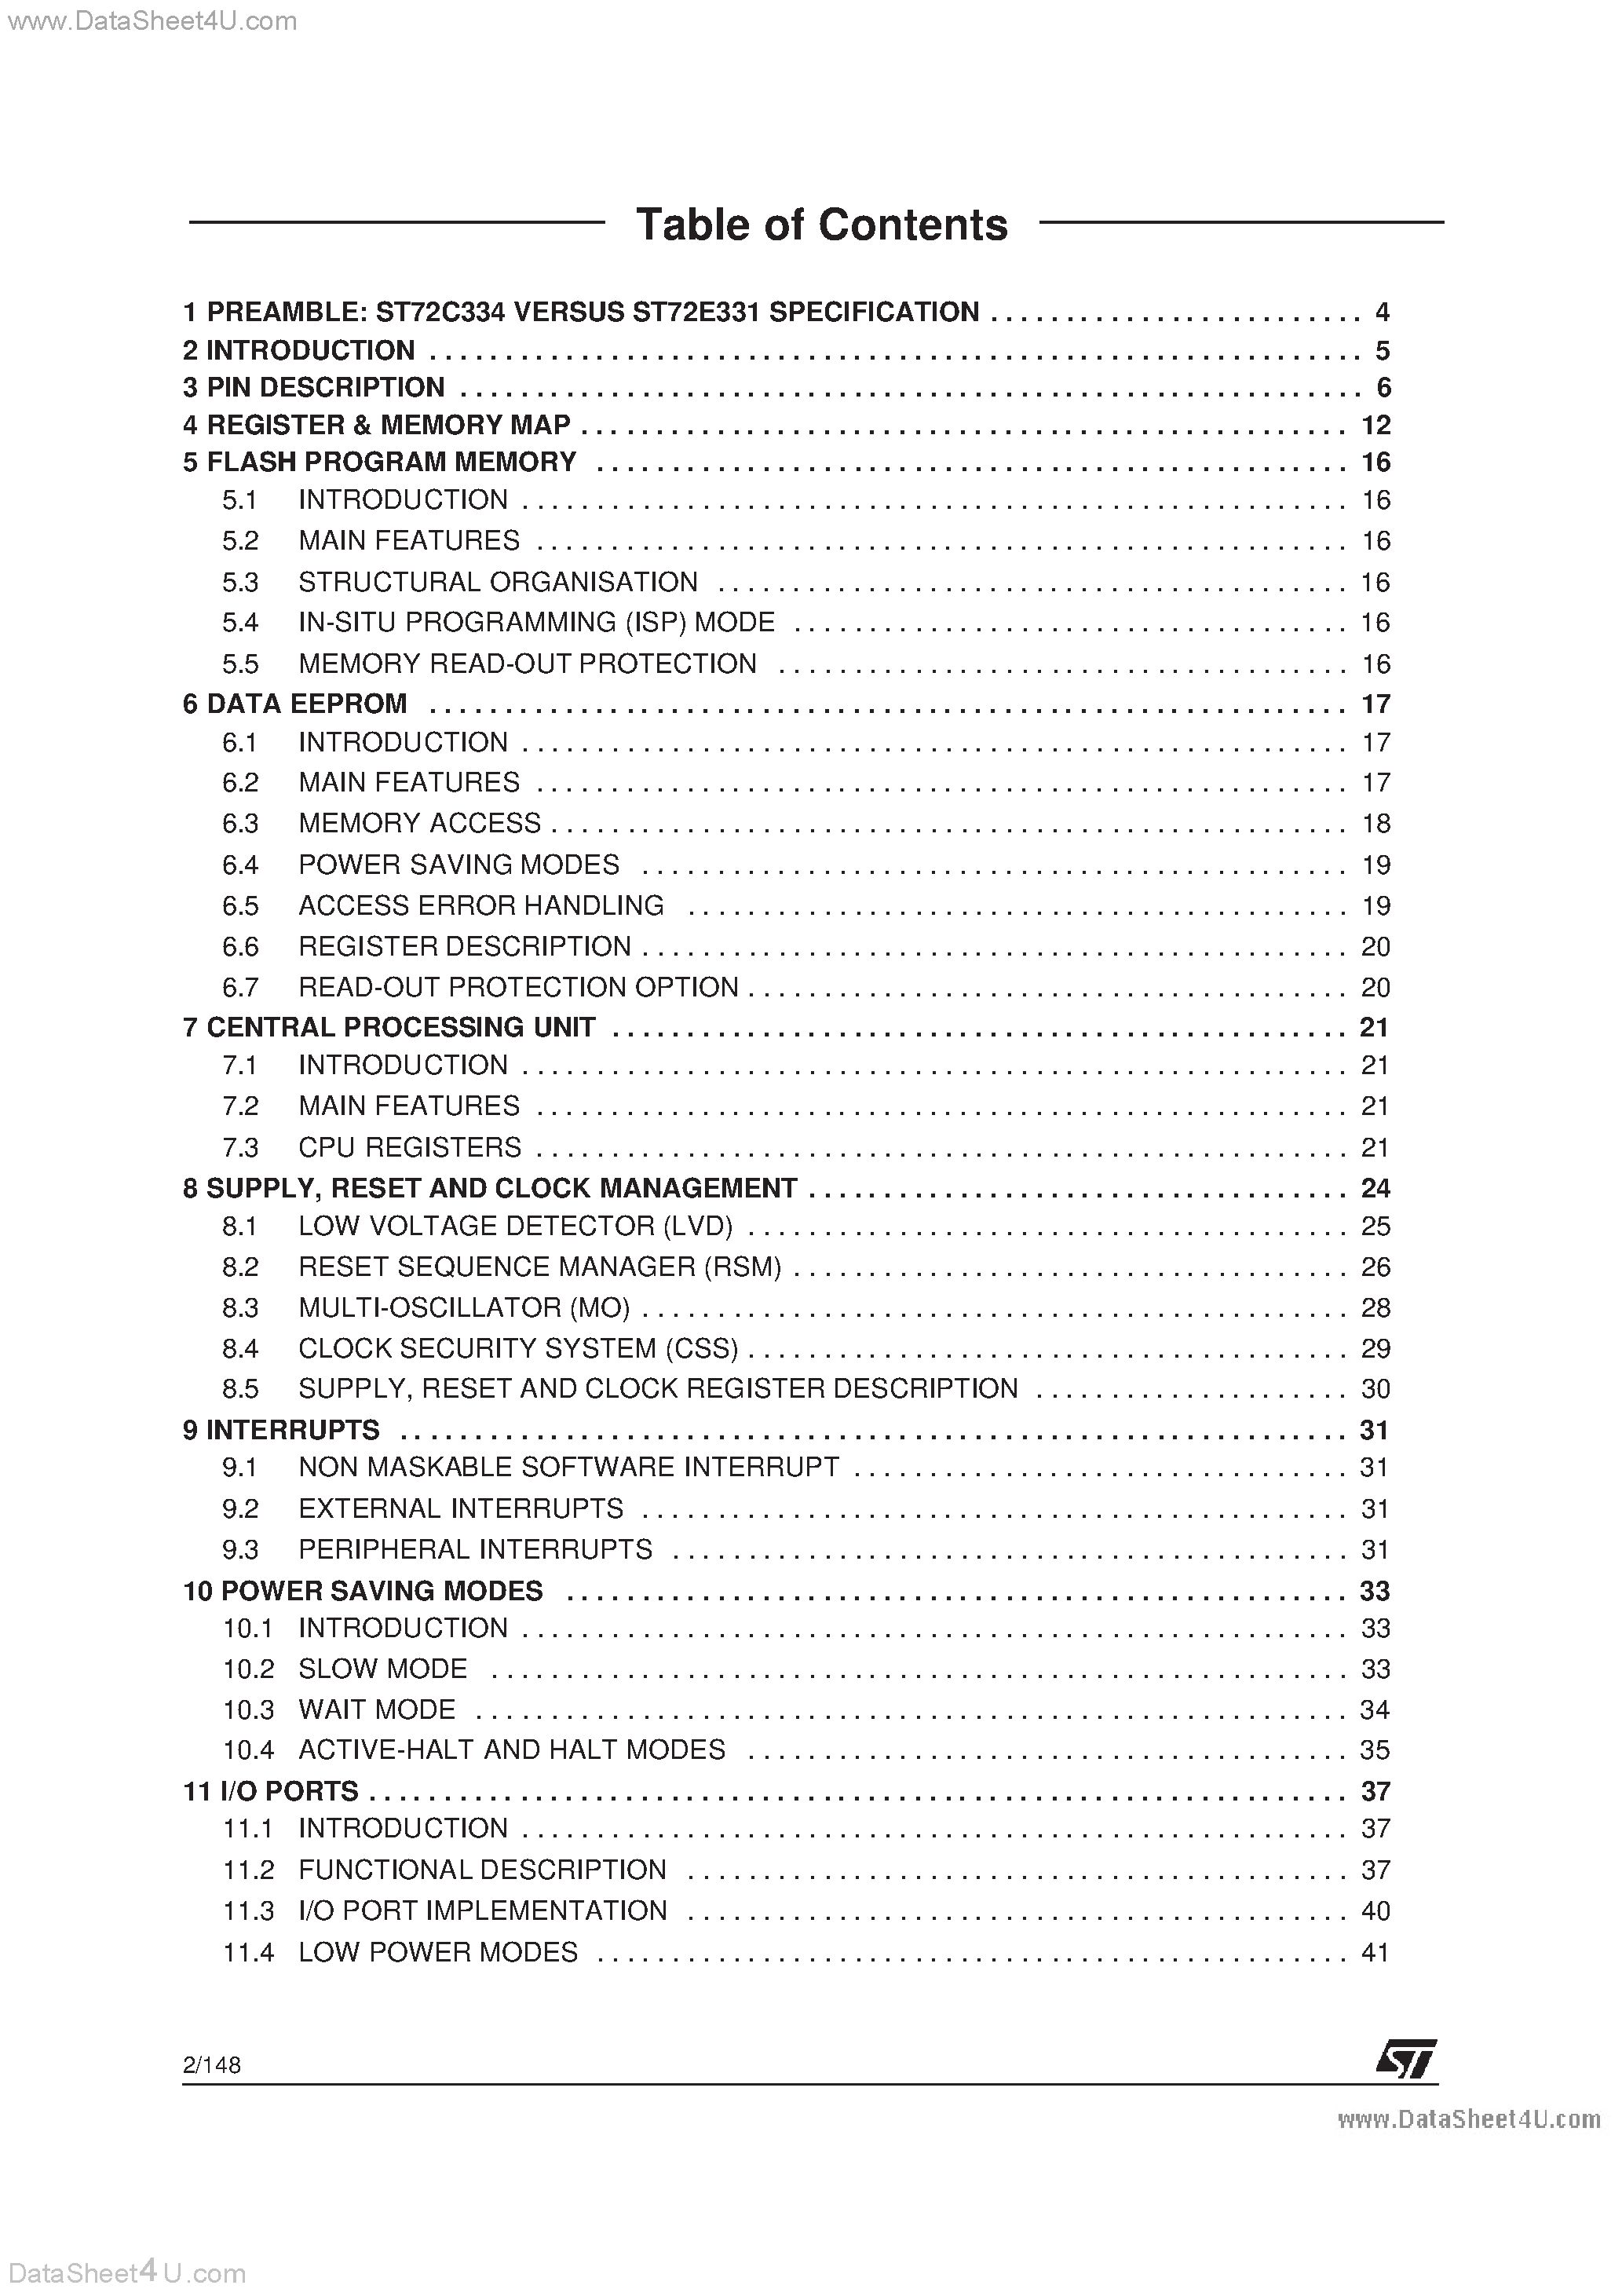 Datasheet ST72124J - (ST72314J / ST72124J / ST72334J) 8-BIT MCU page 2